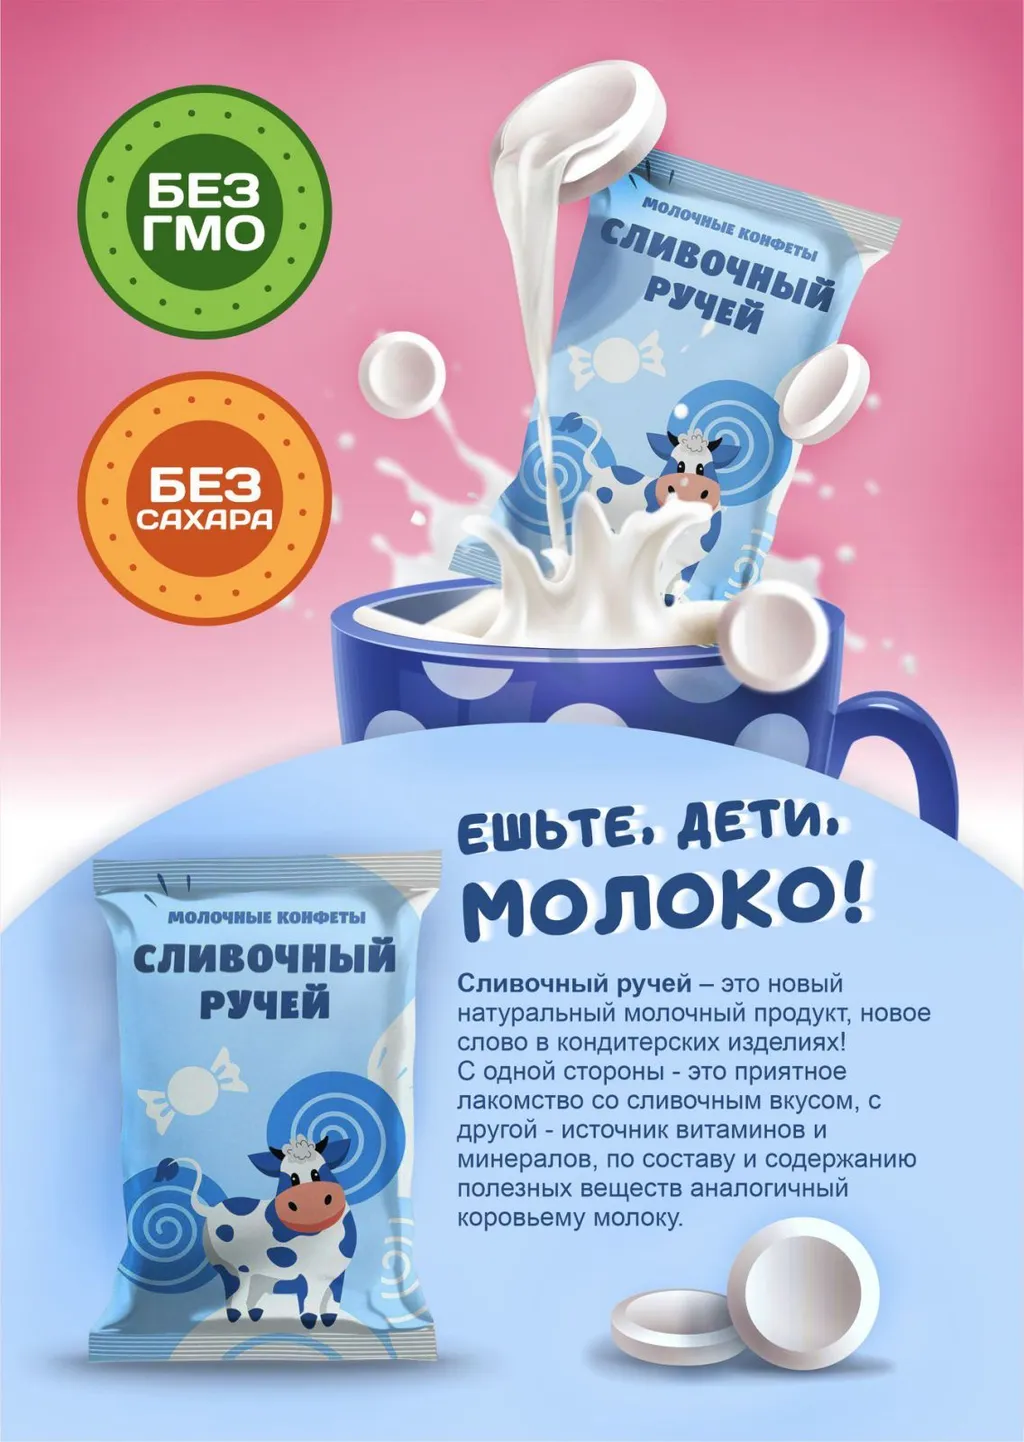 ищем дистрибьюторов молочных конфет в Улане-Удэ 3